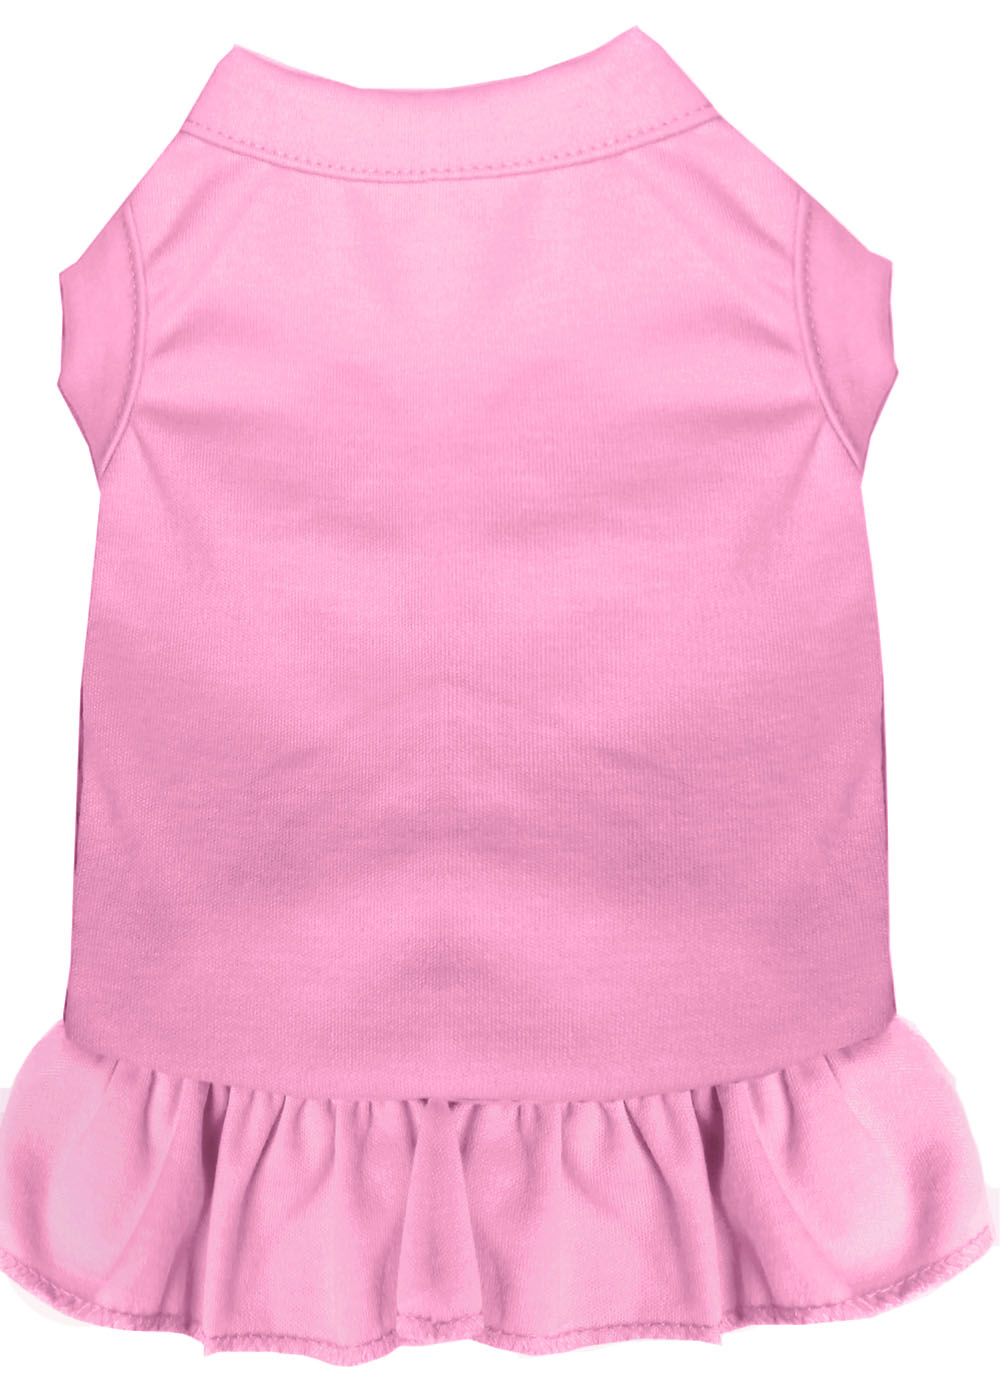 Plain Pet Dress Light Pink XL